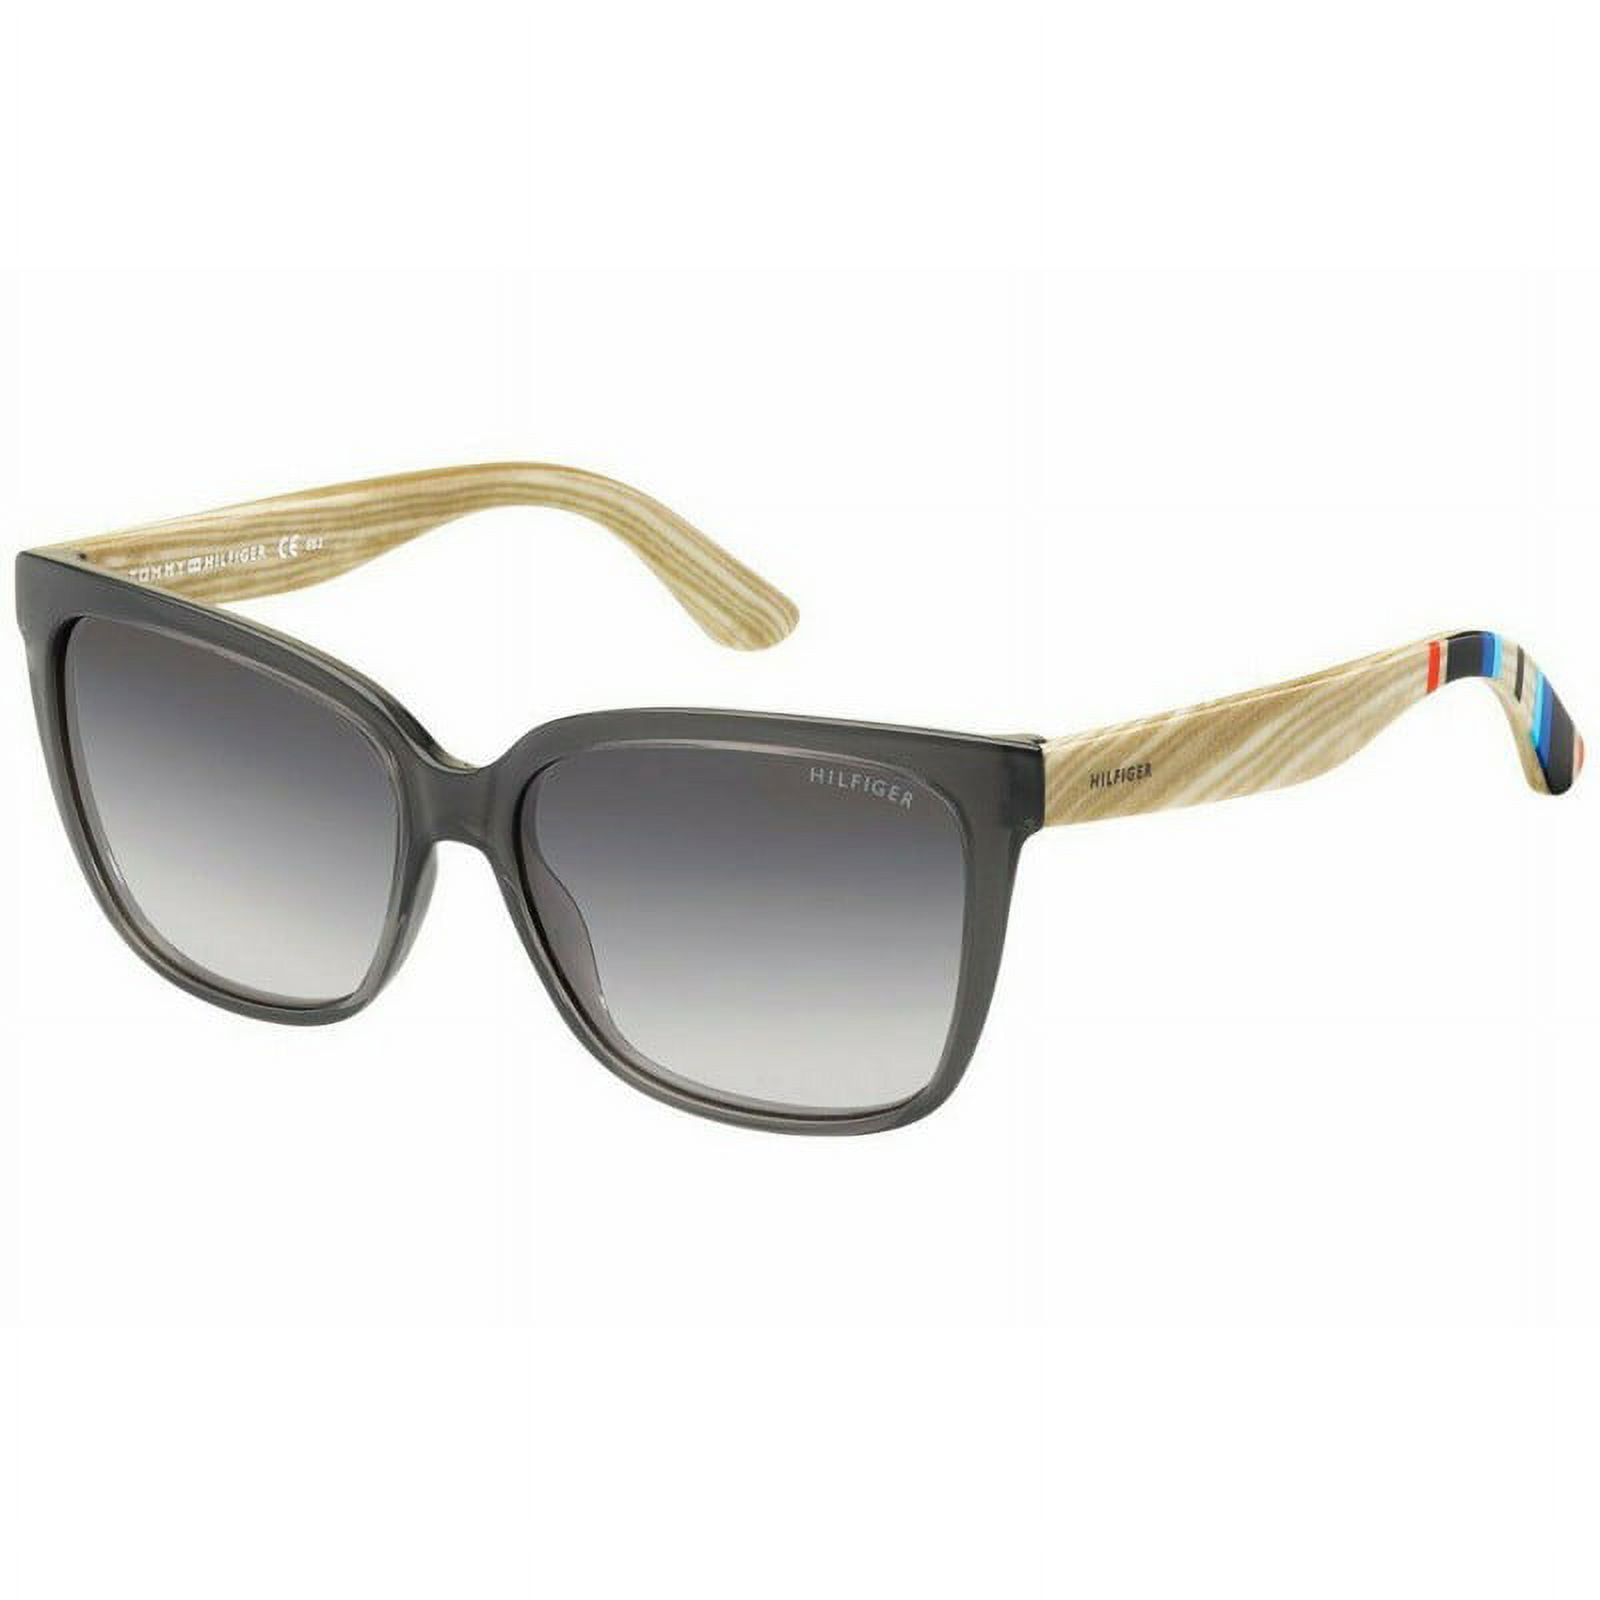 Sunglasses Tommy Hilfiger T_hilfiger 1312 S 0X21 Kuwait